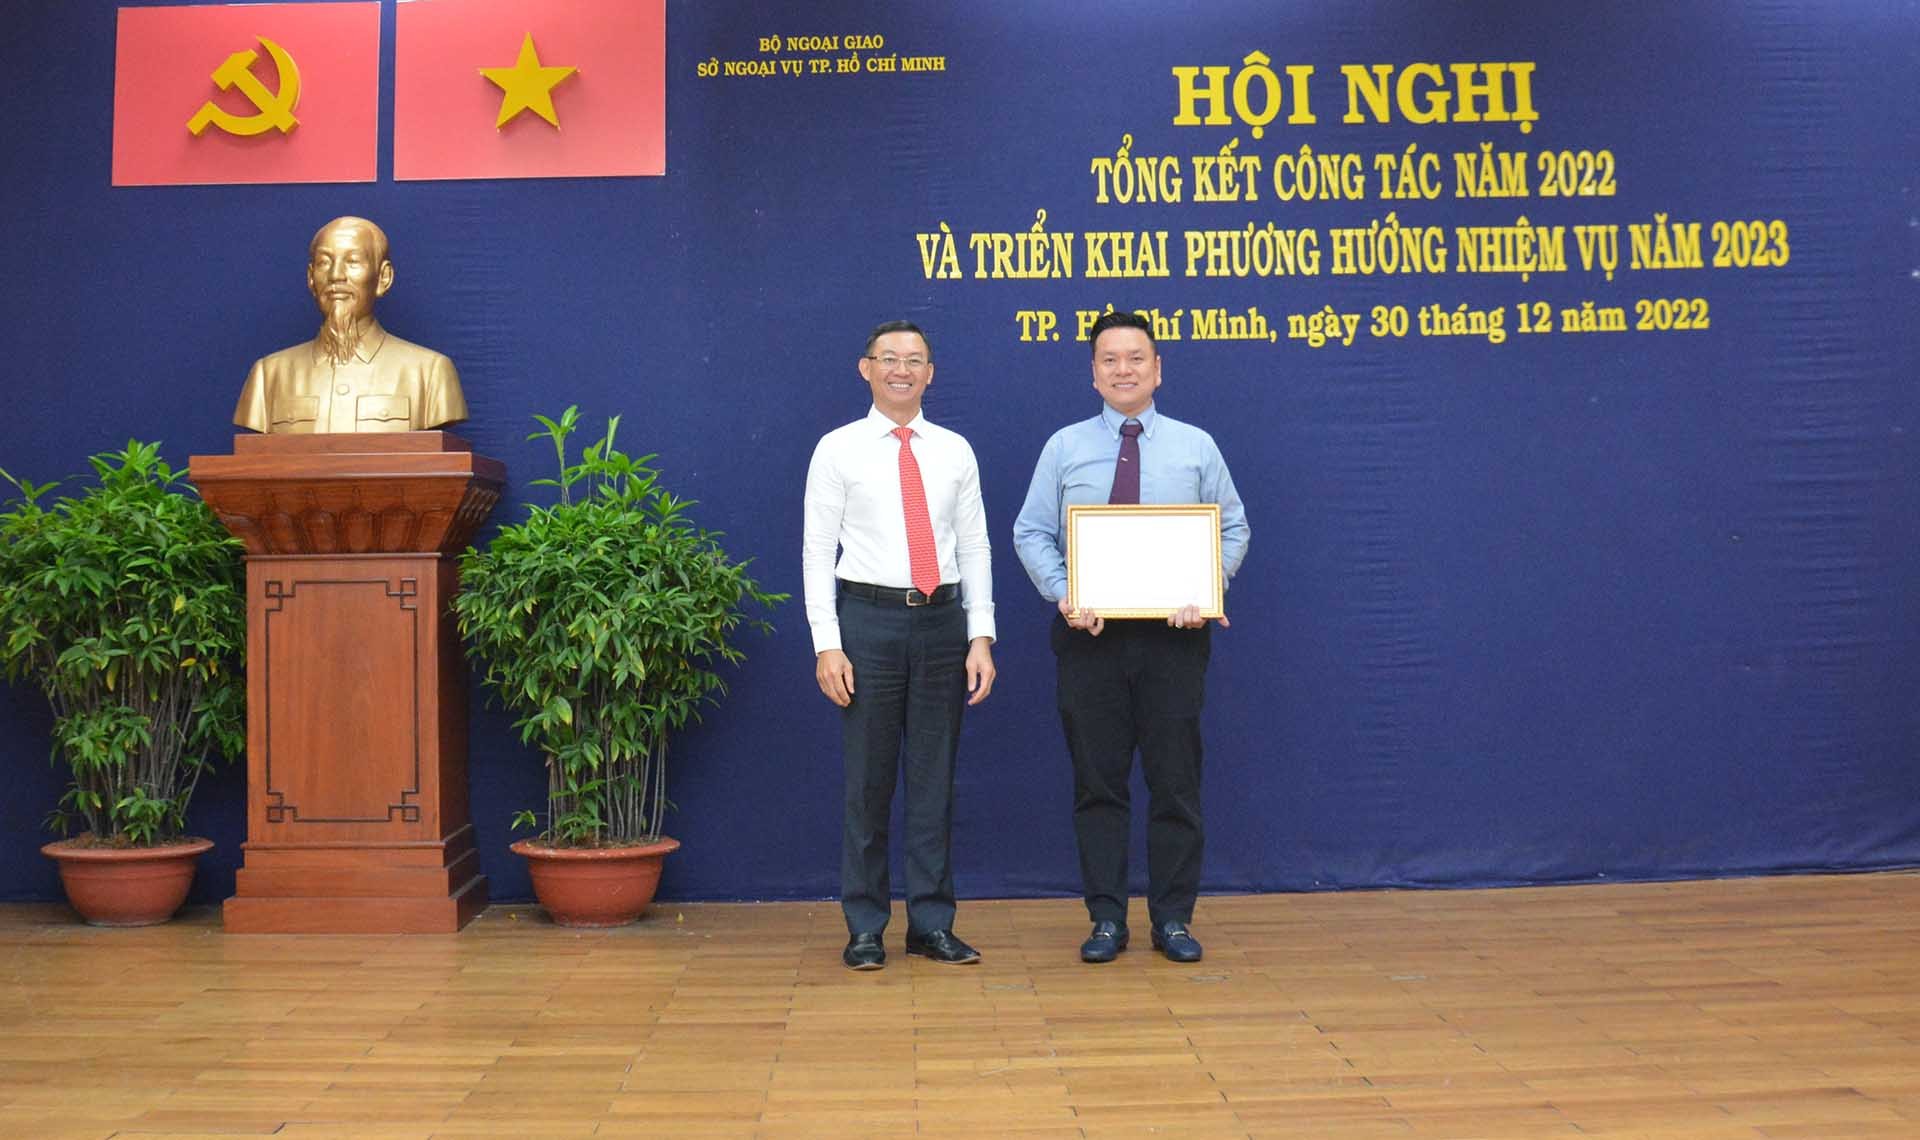 Sở Ngoại vụ TP. Hồ Chí Minh tổng kết công tác 2022 và triển khai nhiệm vụ 2023